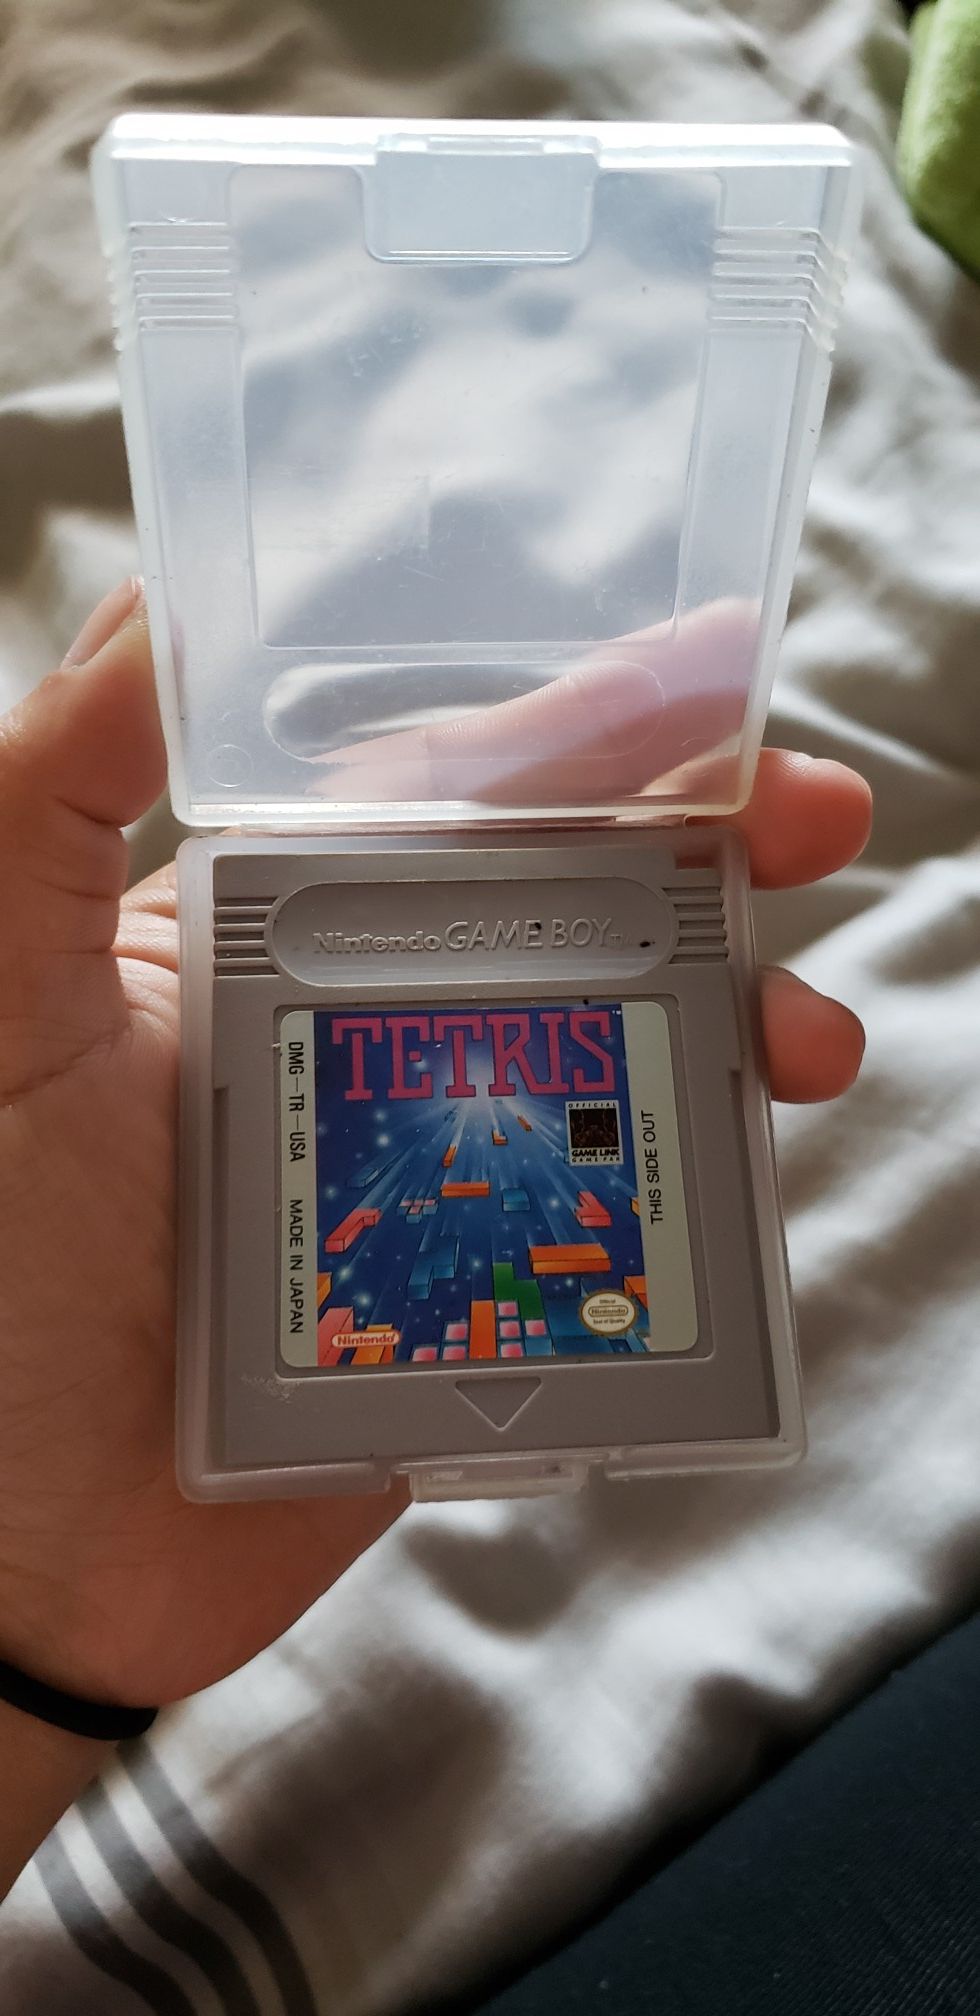 Tetris Nintendo Gameboy game